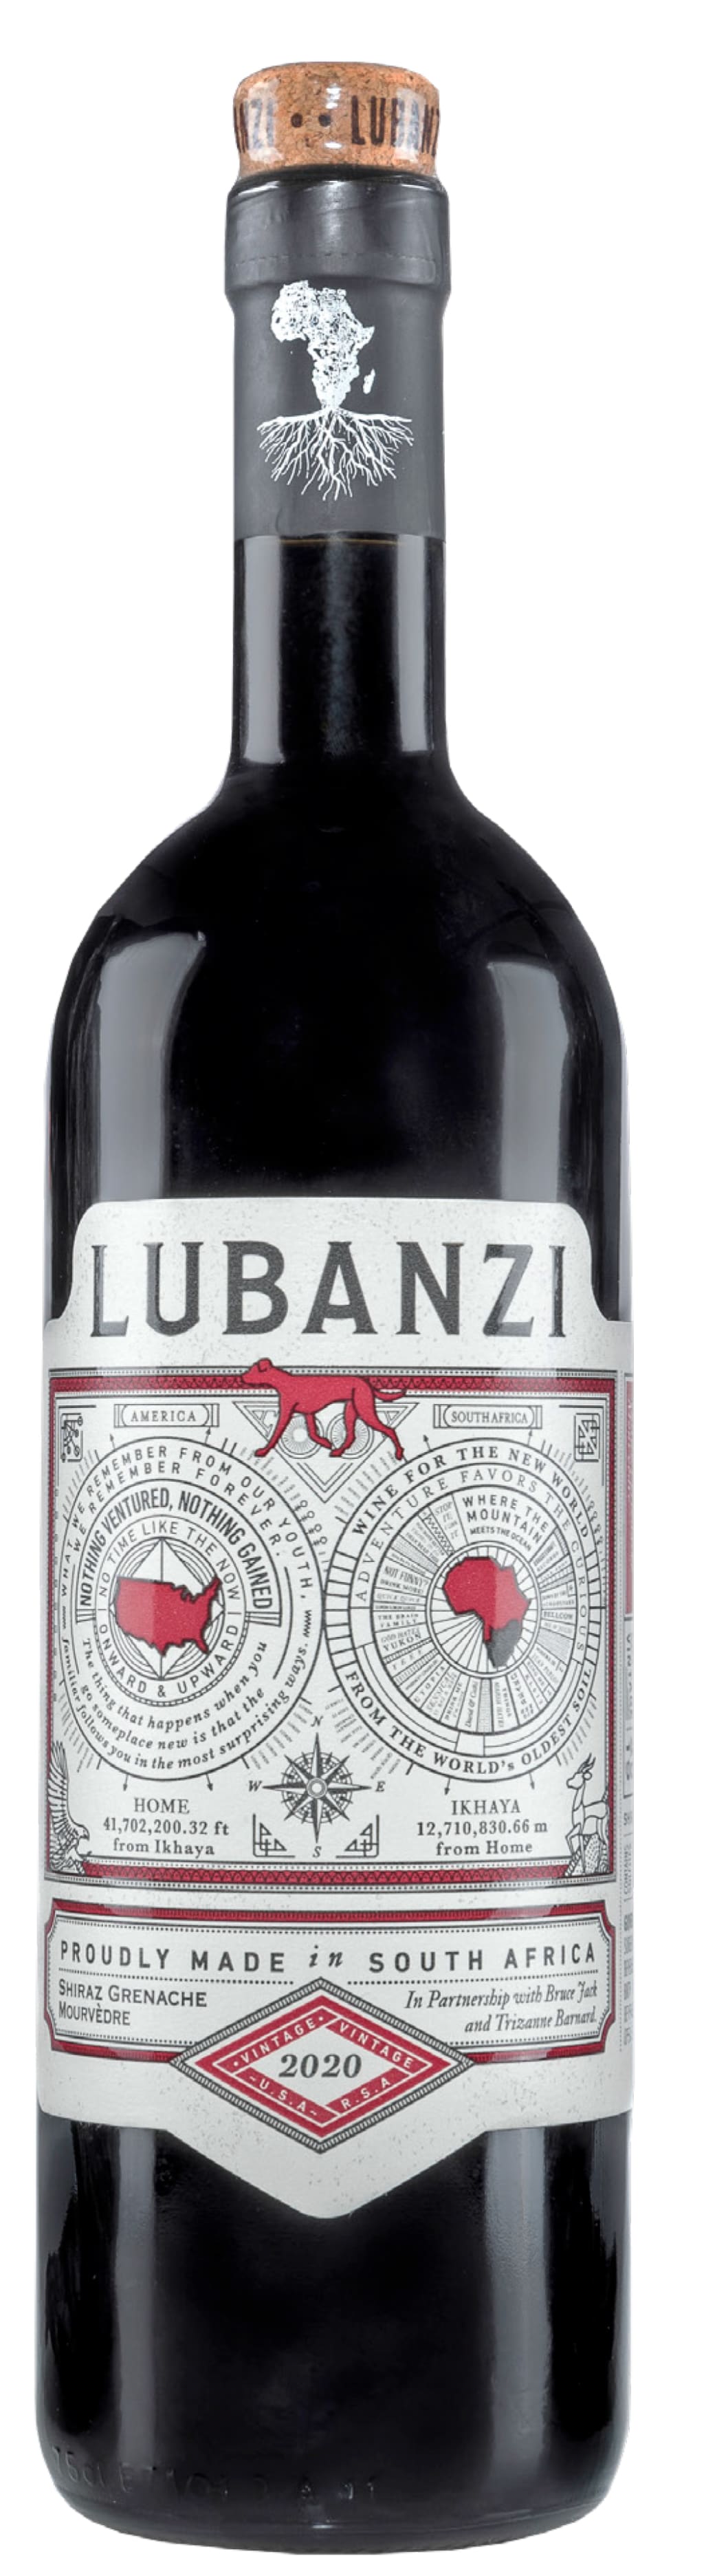 Lubanzi Red Blend 2020 12x750ml 2020